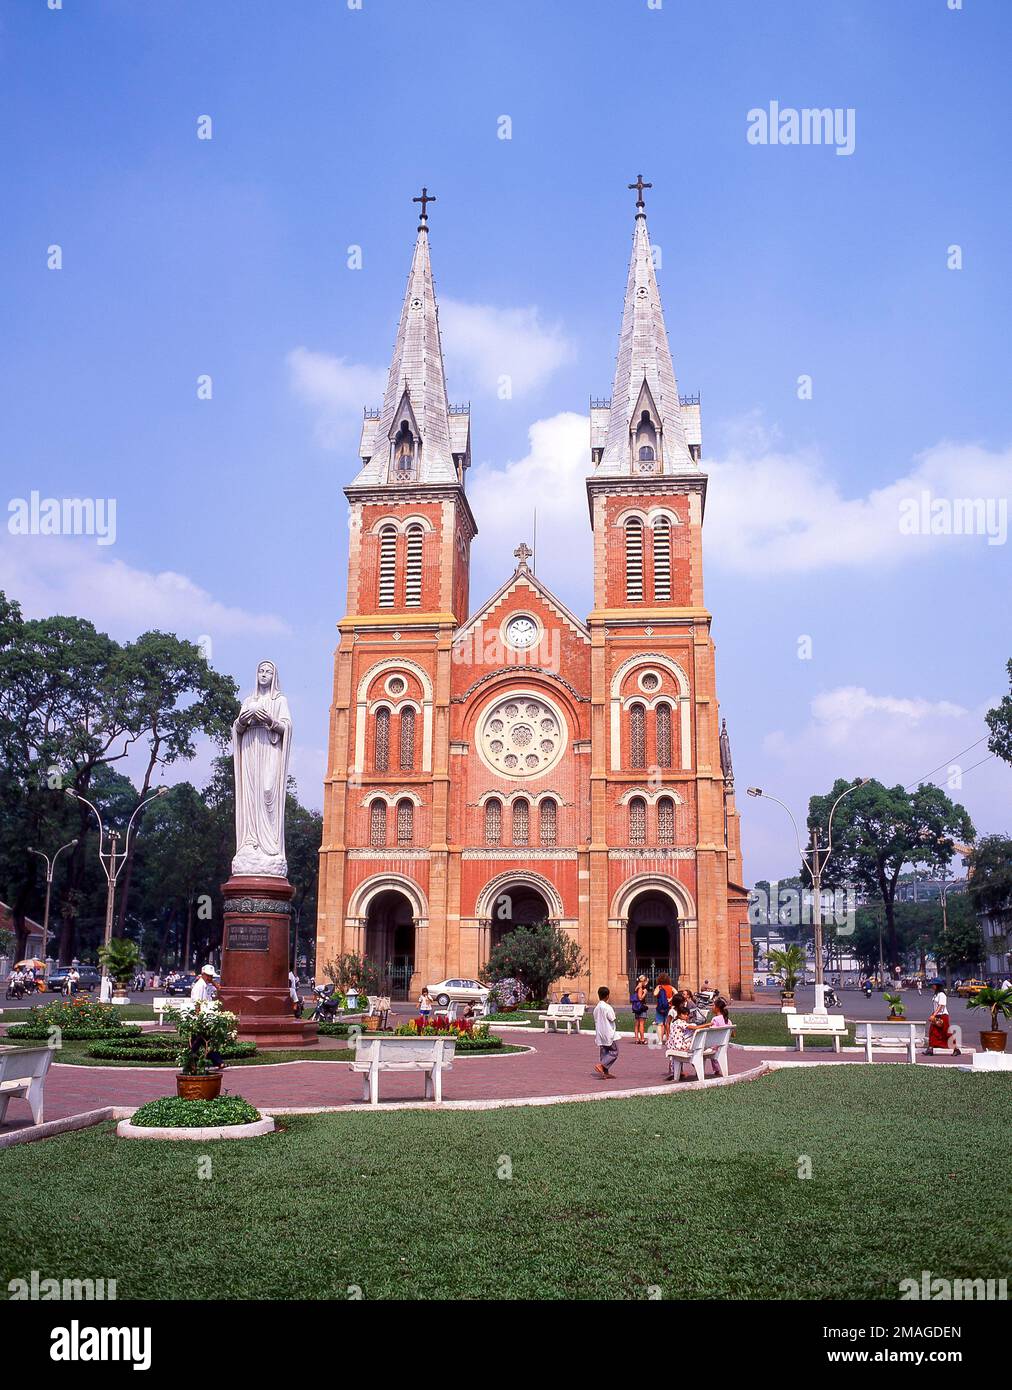 Cattedrale di Notre-Dame Basilica di Saigon, Công xã Parigi, ho Chi Minh City (Saigon), Repubblica socialista del Vietnam Foto Stock